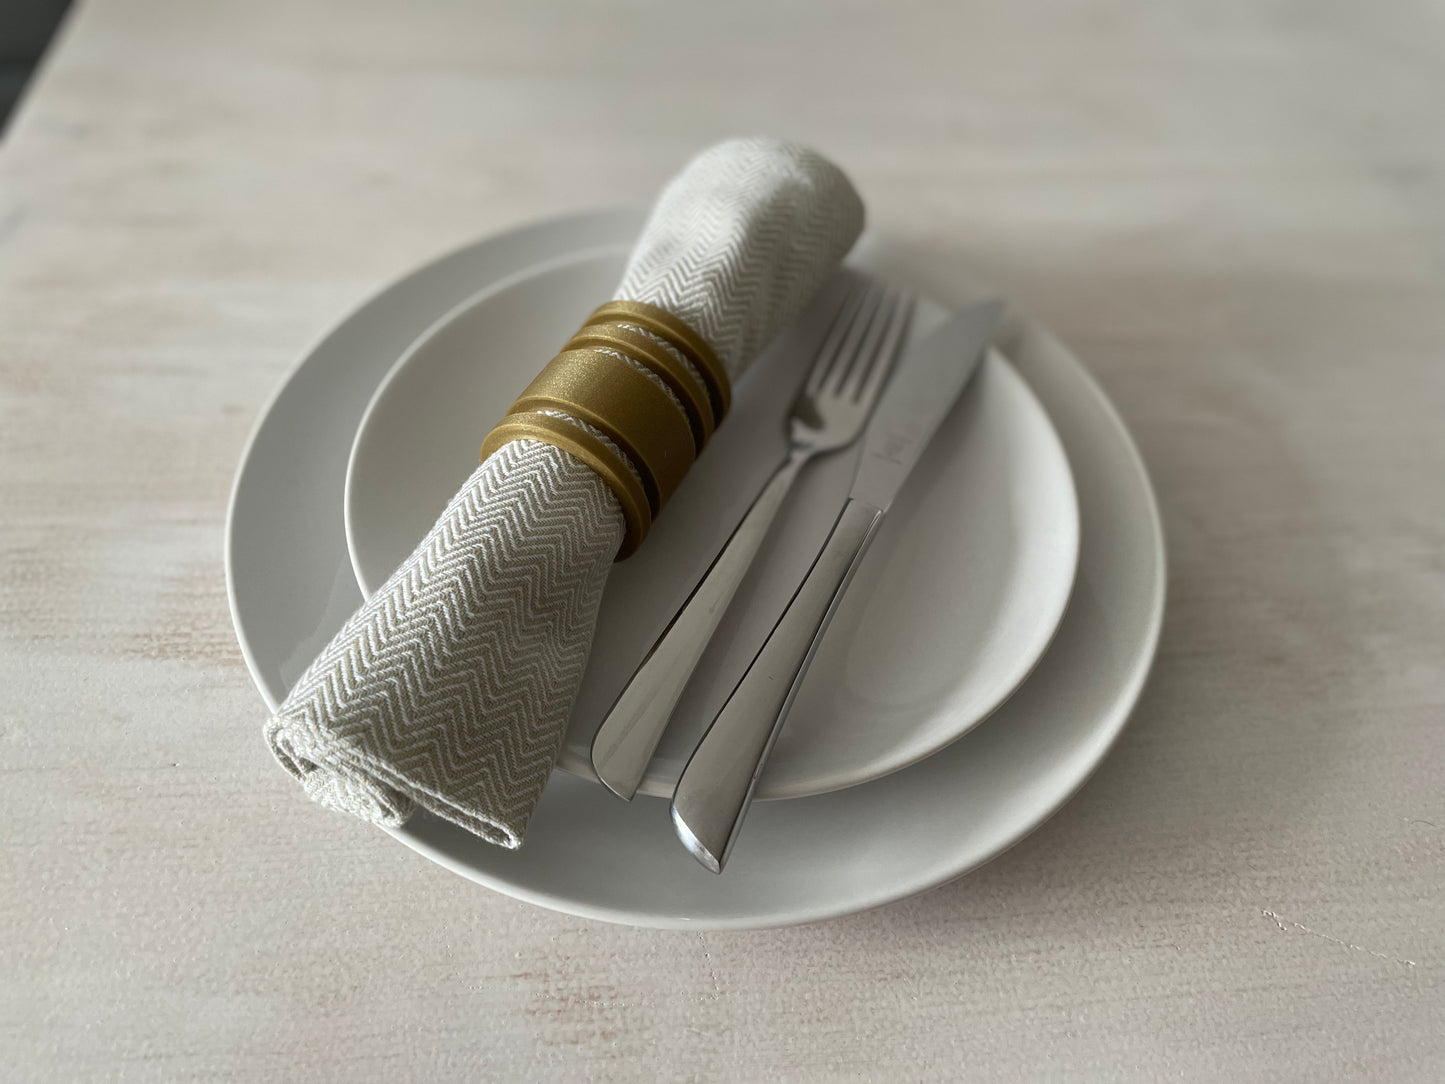 Glänzende Runde Serviettenringe - 4 Stück Set - Elegante Tischdekoration für Ihre Hochzeit!